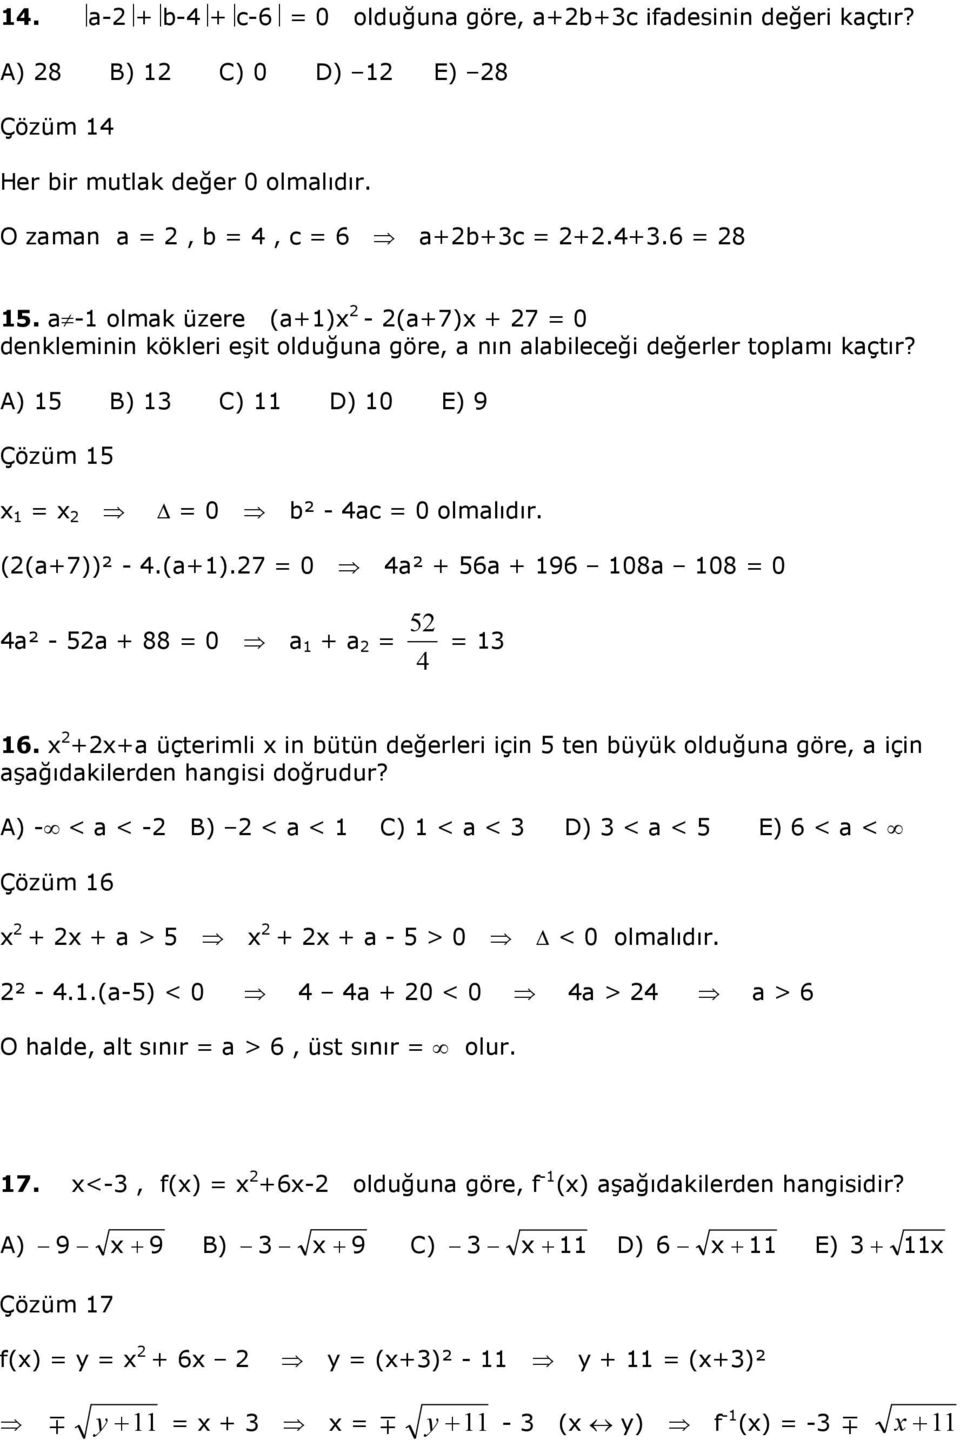 ++ üçterimli in bütün değerleri için ten büyük olduğun göre, için şğıdkilerden hngisi doğrudur? A) - < < - B) < < C) < < D) < < E) 6 < < Çözüm 6 + + > + + - > 0 < 0 olmlıdır. ² -.